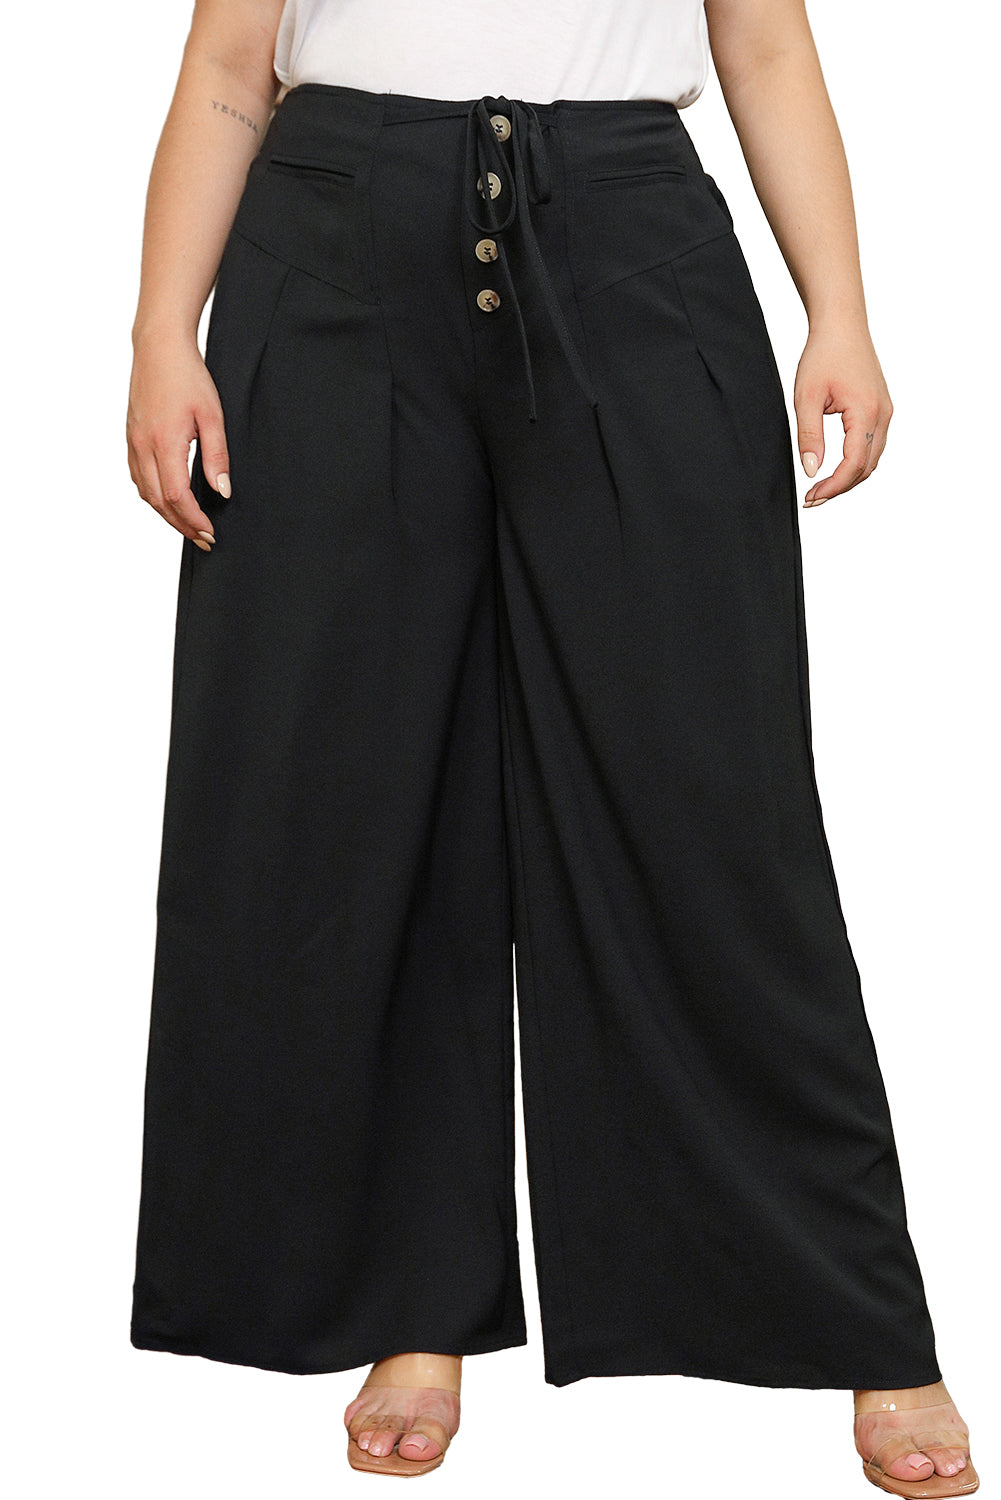 Pantalon noir boutonné à lacets et taille large, grande taille